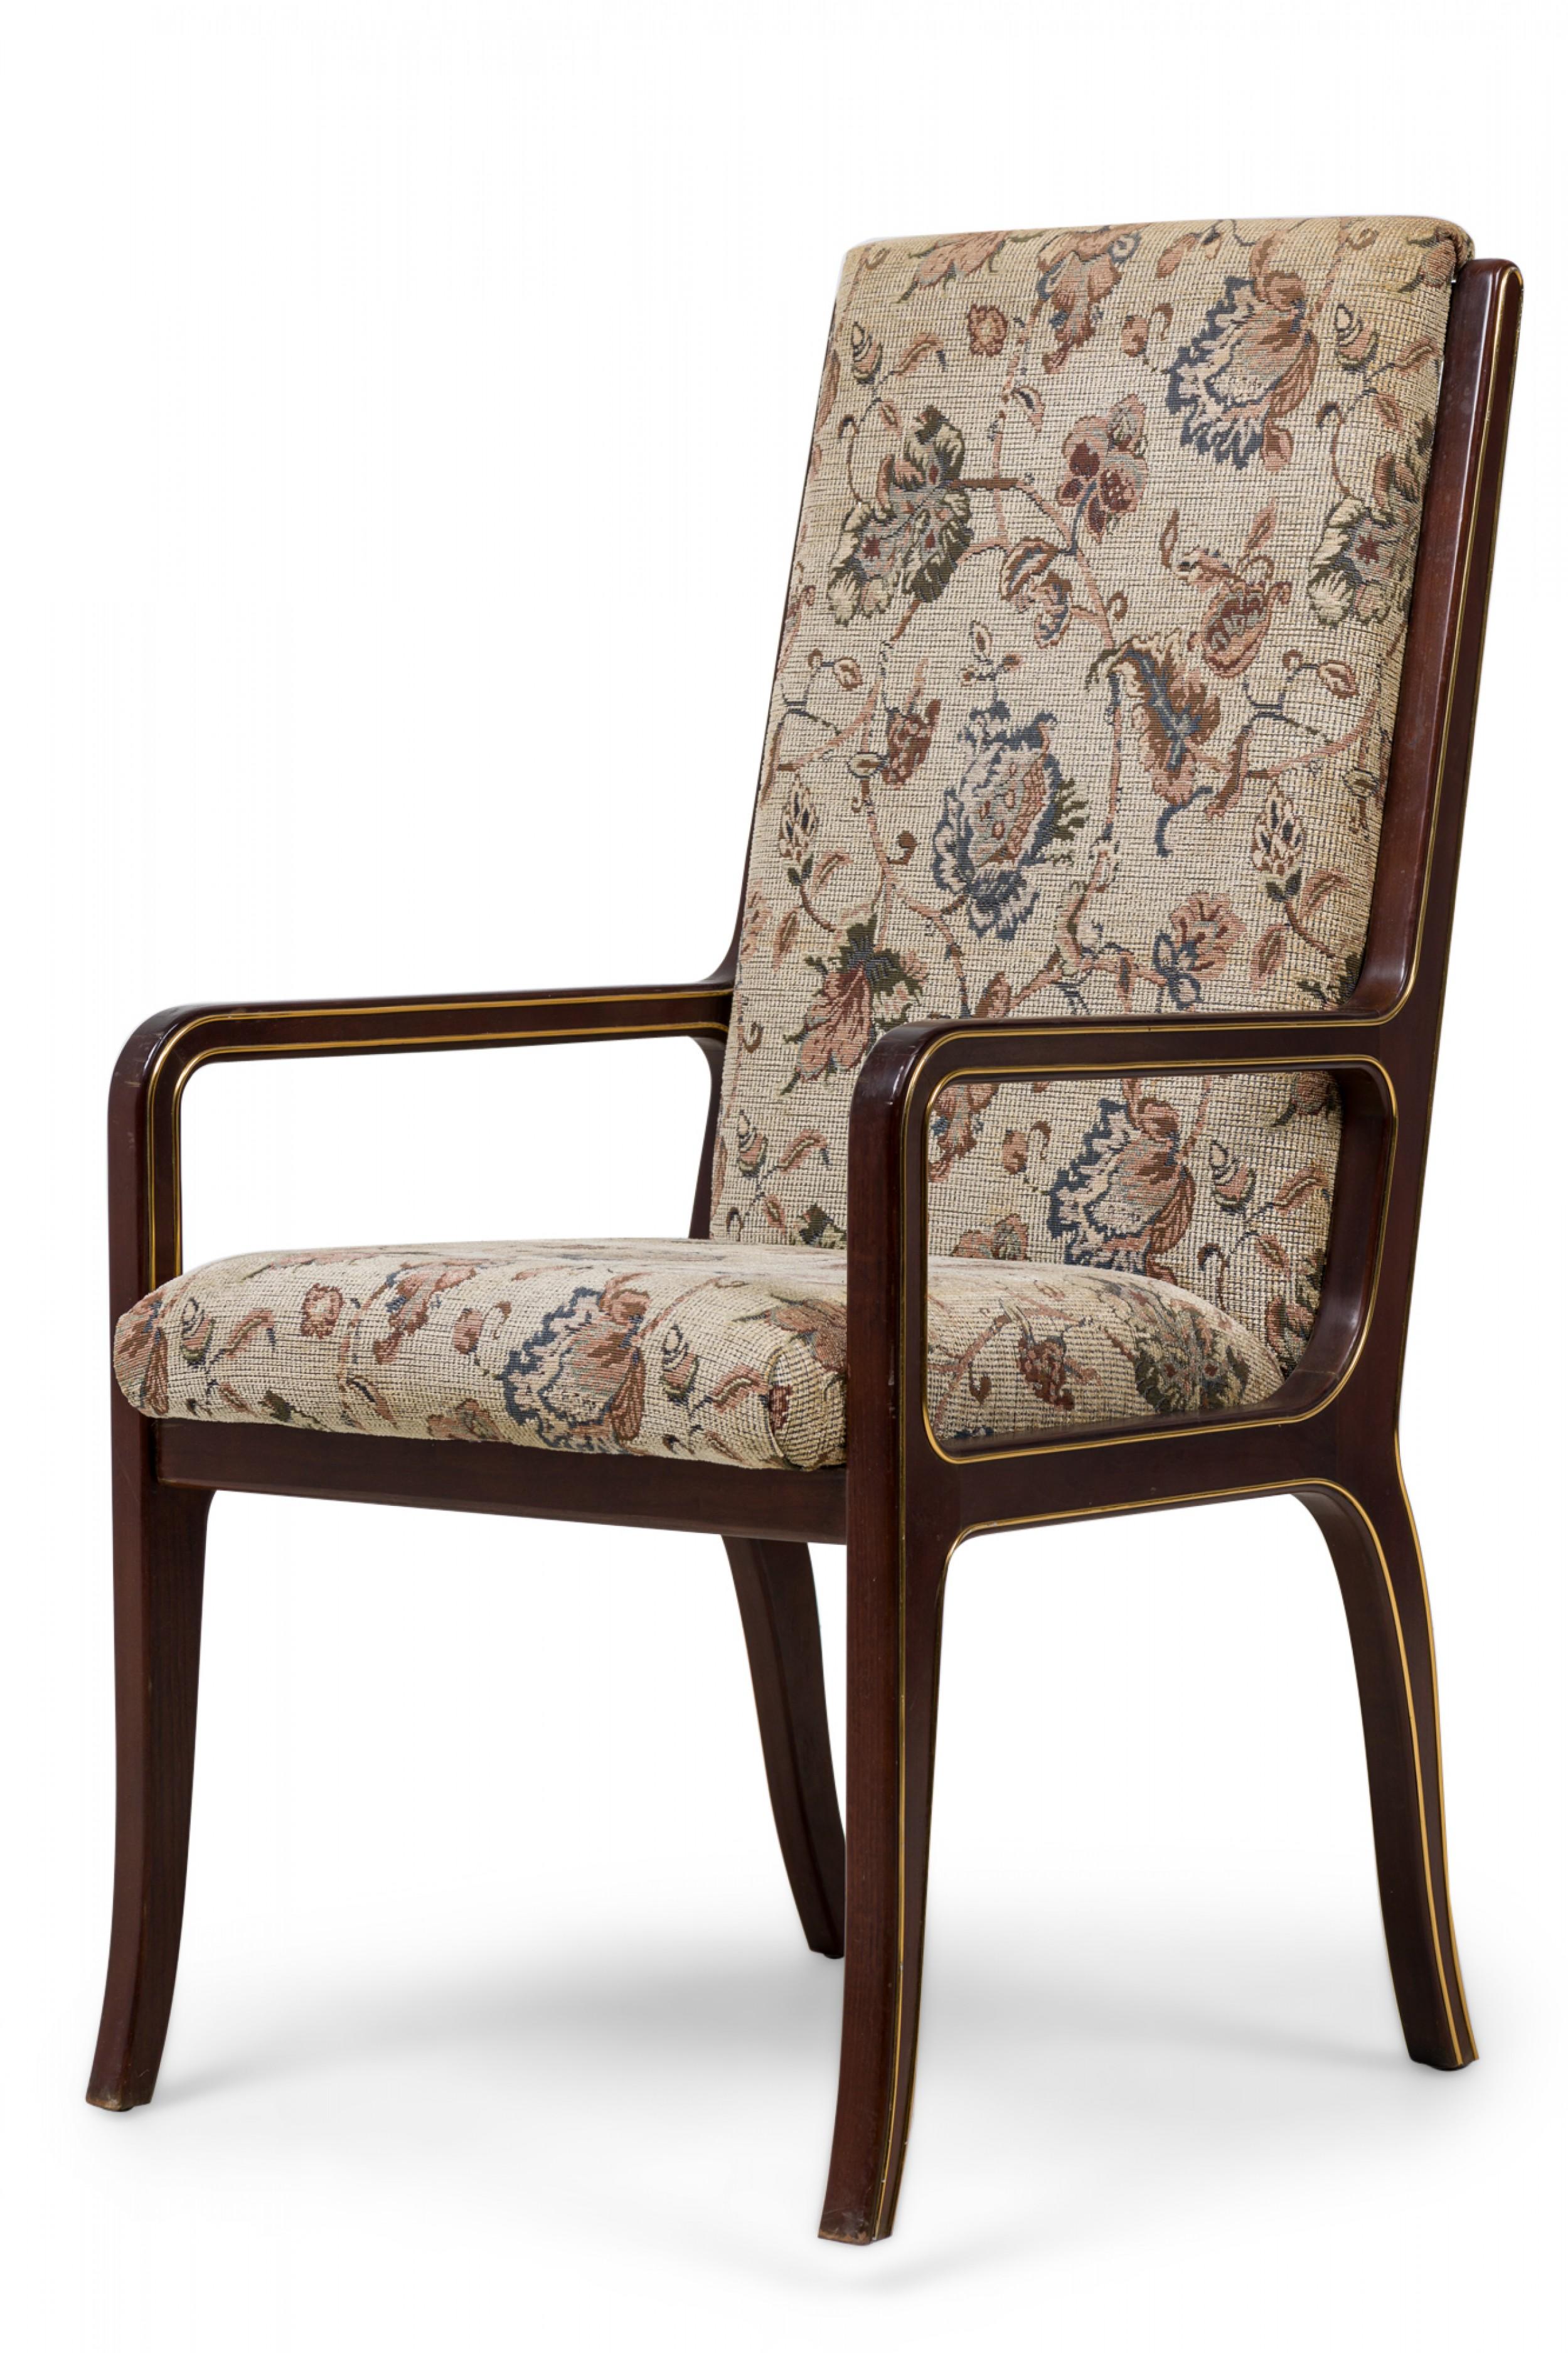 SET aus 6 Mahagoni-Esszimmerstühlen (1 Sessel, 5 Beistellstühle) im neoklassizistischen (russischen) Stil der Jahrhundertmitte, in geformter Form mit Messingbeschlägen an den Seiten und mit hohen Rückenlehnen und Sitzen, die mit einem braunen und